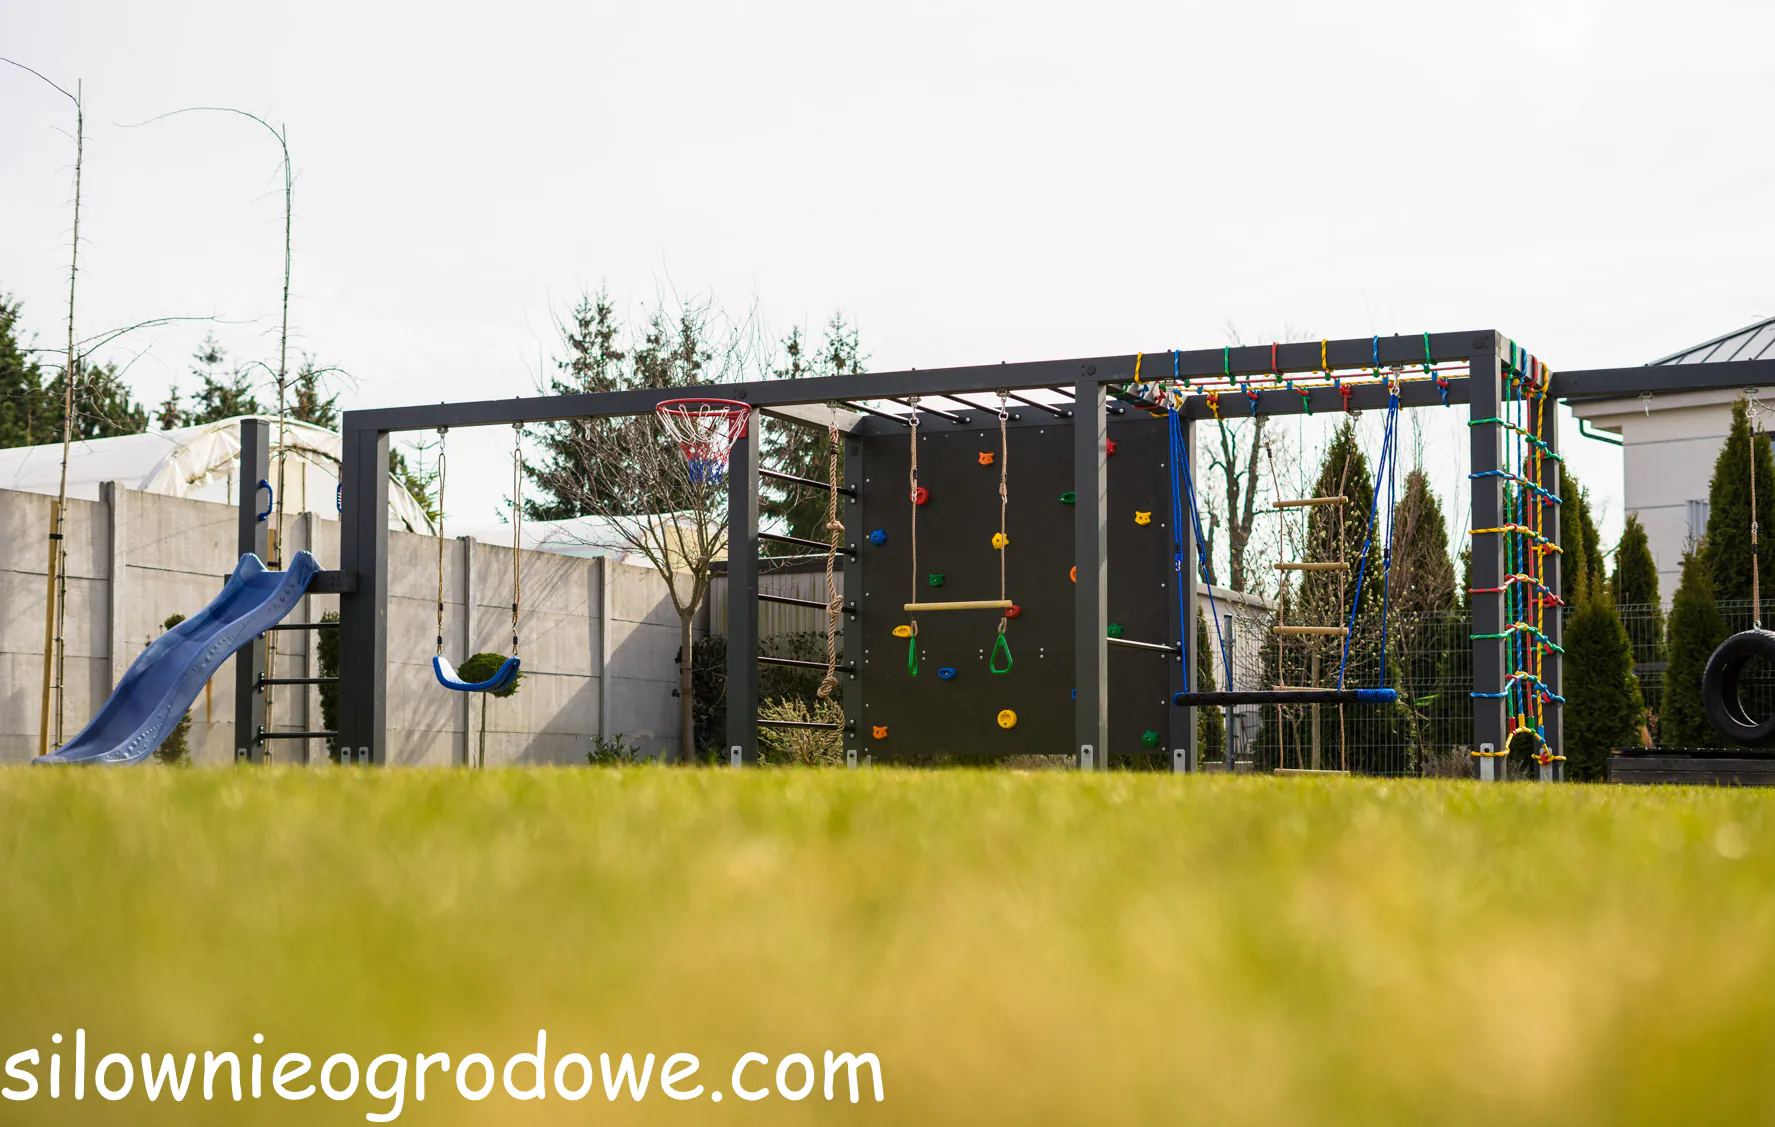 Nowoczesny plac zabaw do ogrody ze ścinka wspinaczkową